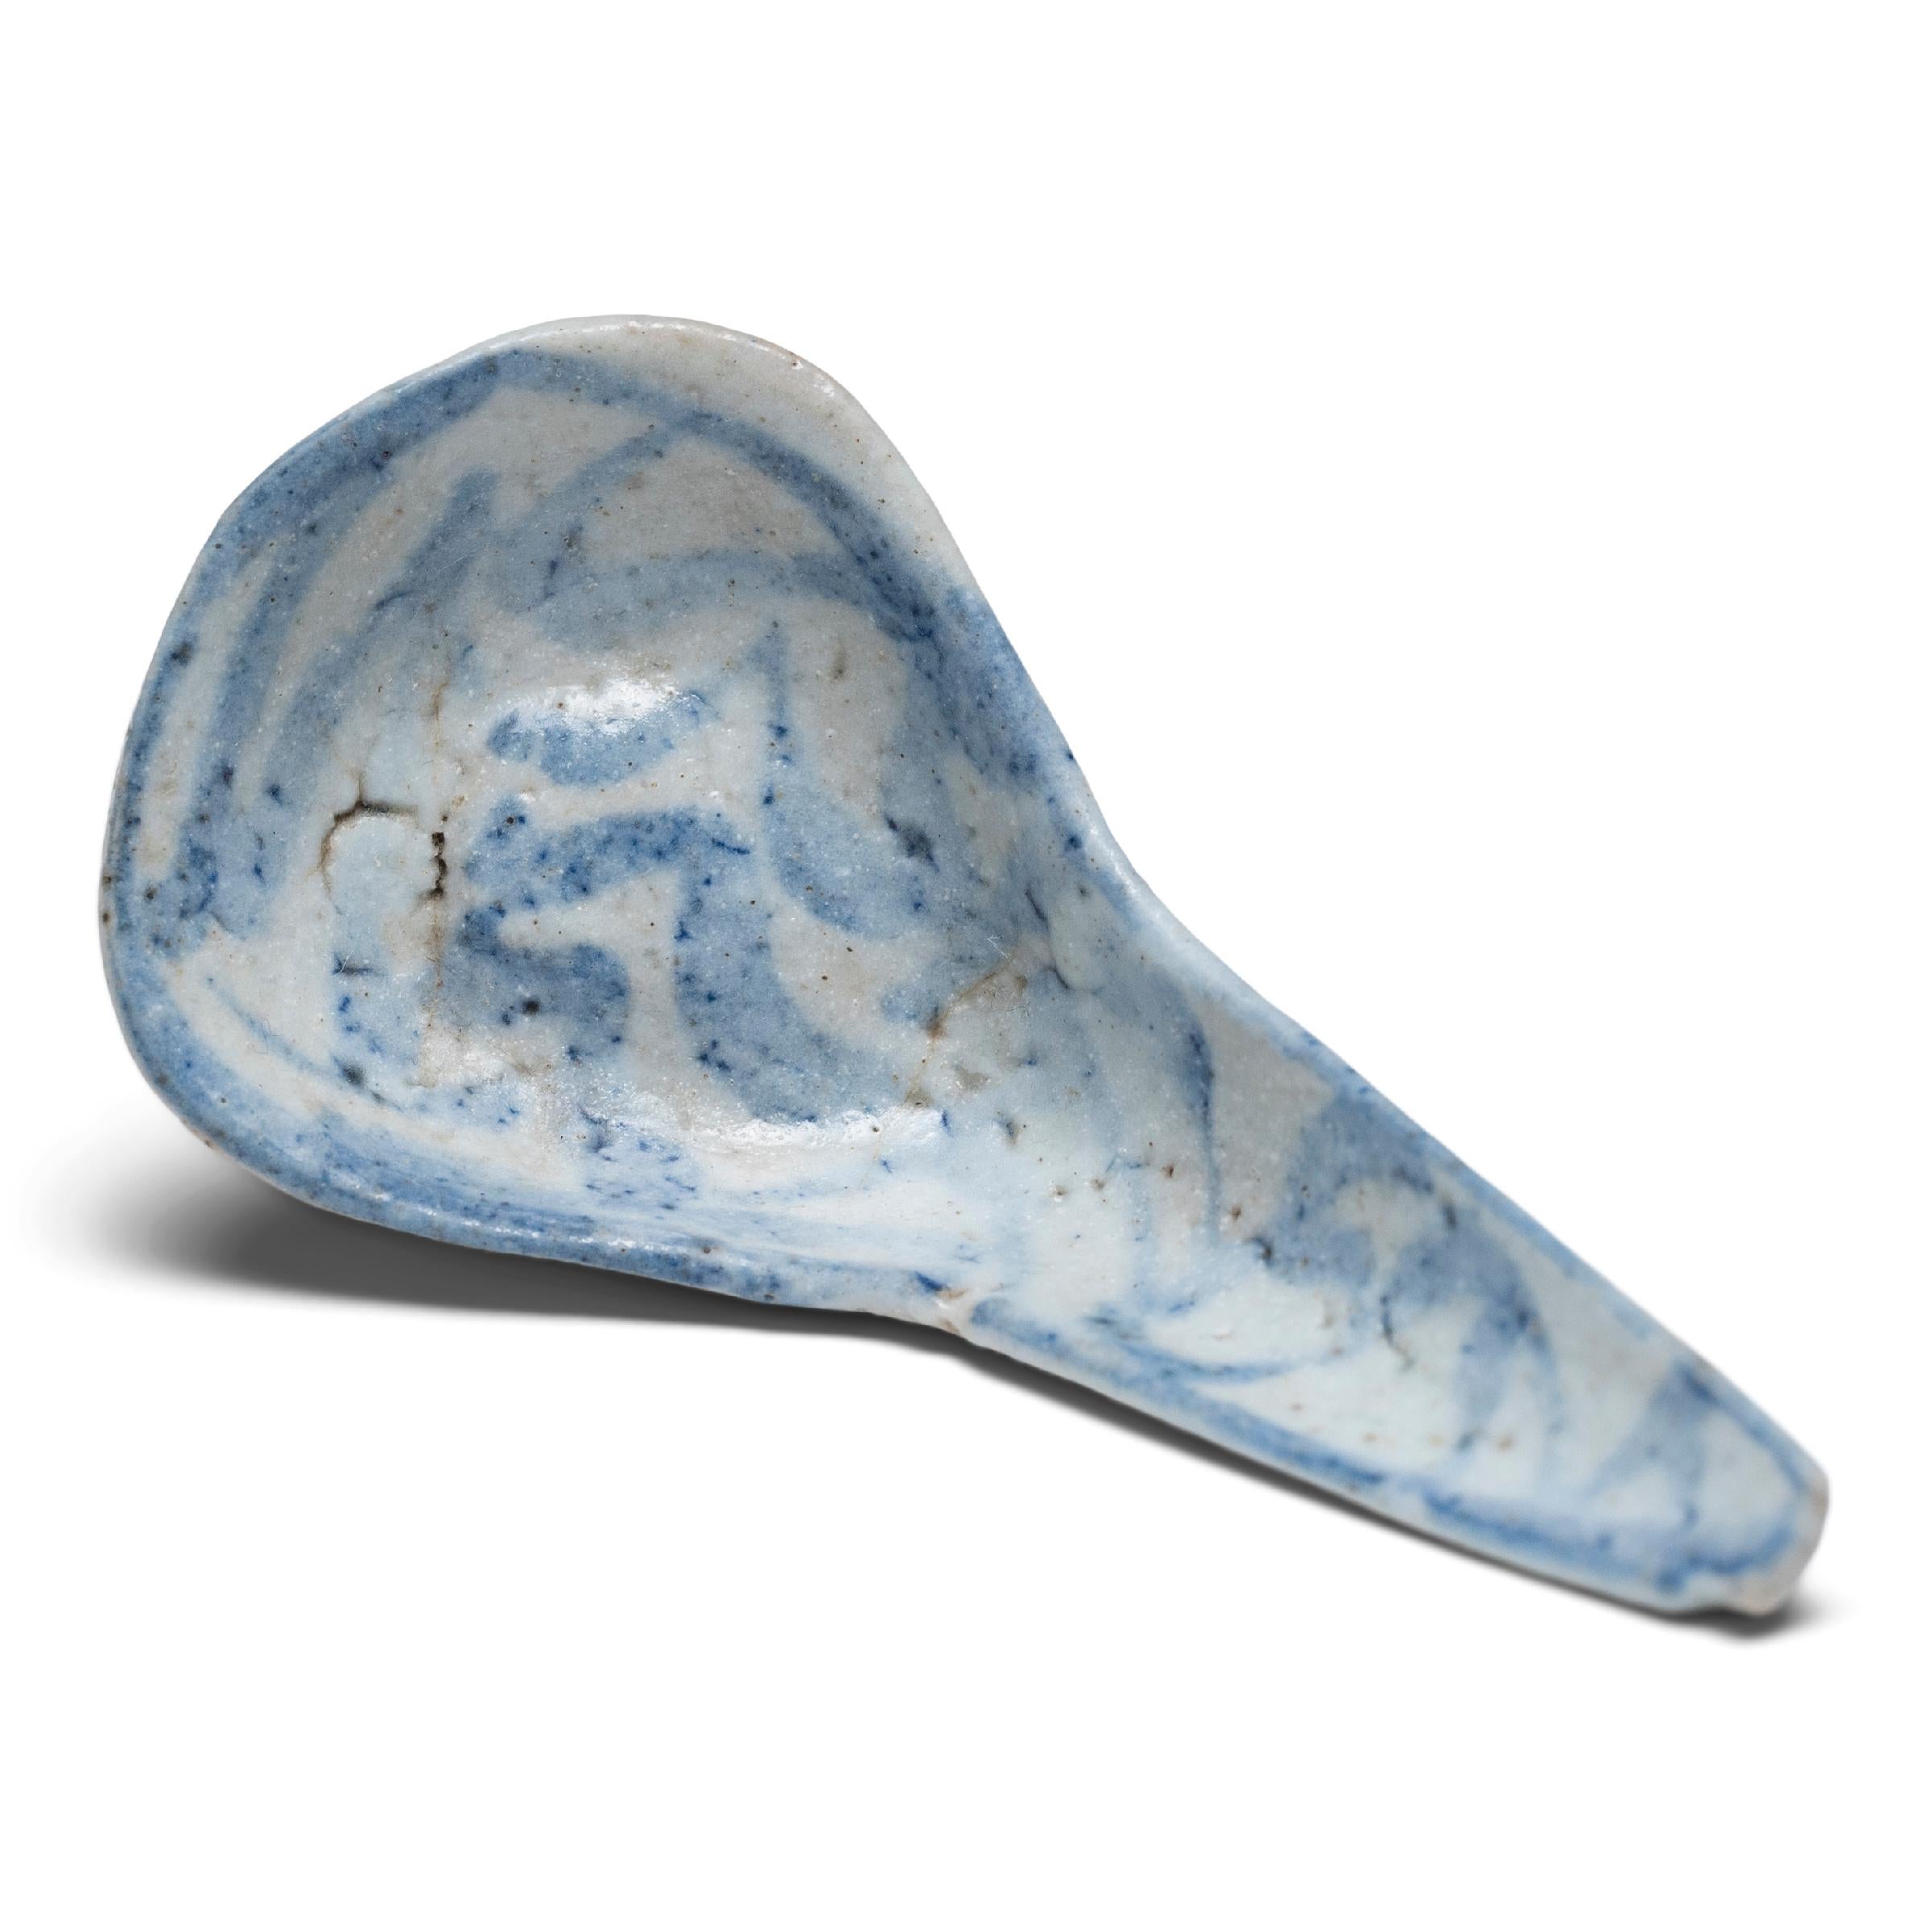 Dieser Suppenlöffel aus Porzellan aus dem 19. Jahrhundert ist ein delikates Beispiel für die altehrwürdige Praxis der blau-weißen Keramik und wurde wahrscheinlich als alltägliches Essgeschirr verwendet. Der Löffel wurde in China bereits in der